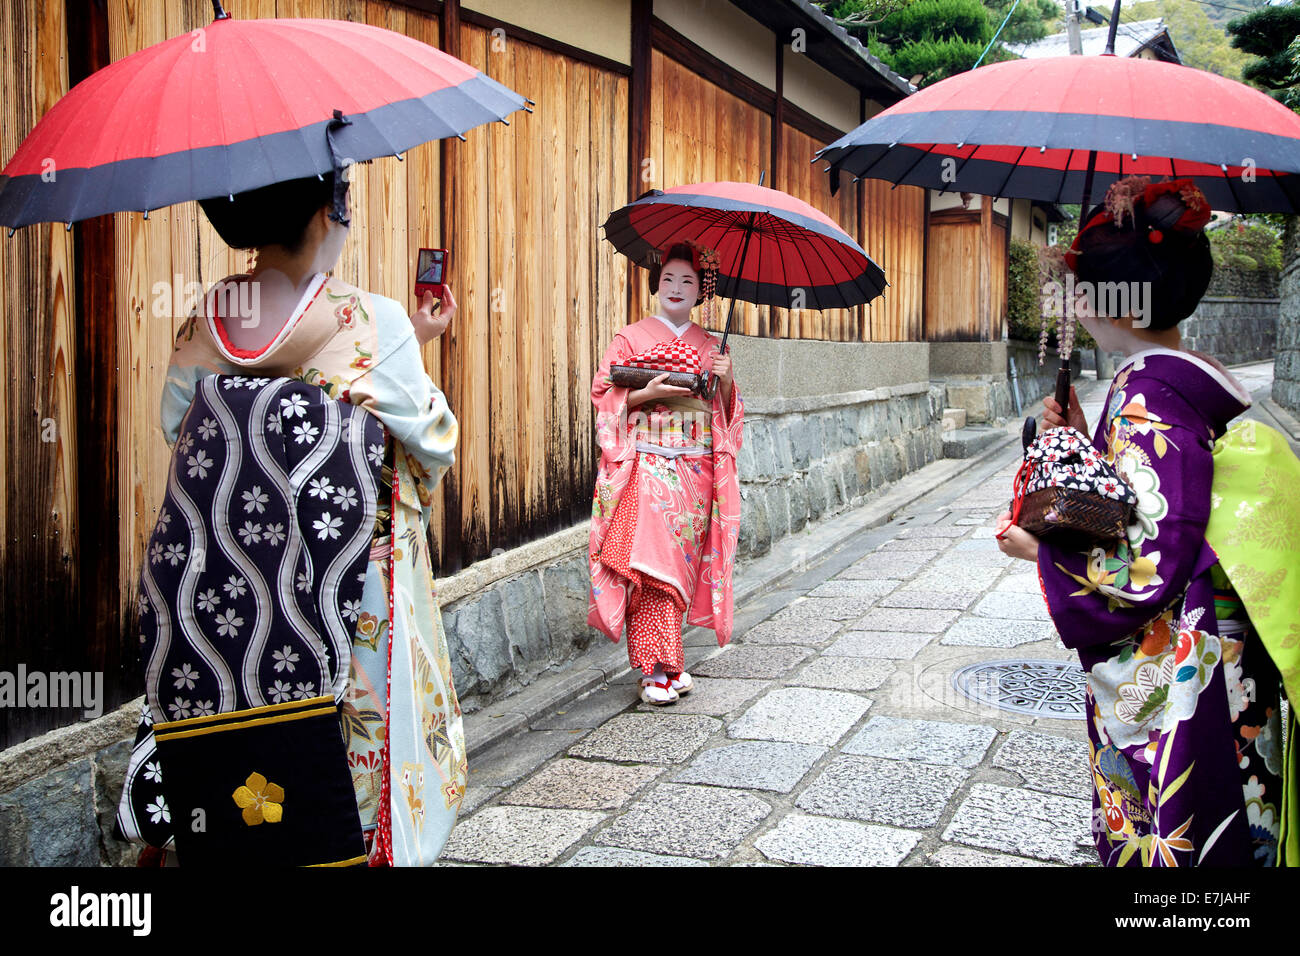 La femme japonaise, la beauté féminine, geishas posant pour une photo, zone de Gion, Kyoto, Japon, Asie. Maquillage geisha traditionnelles et robe Banque D'Images